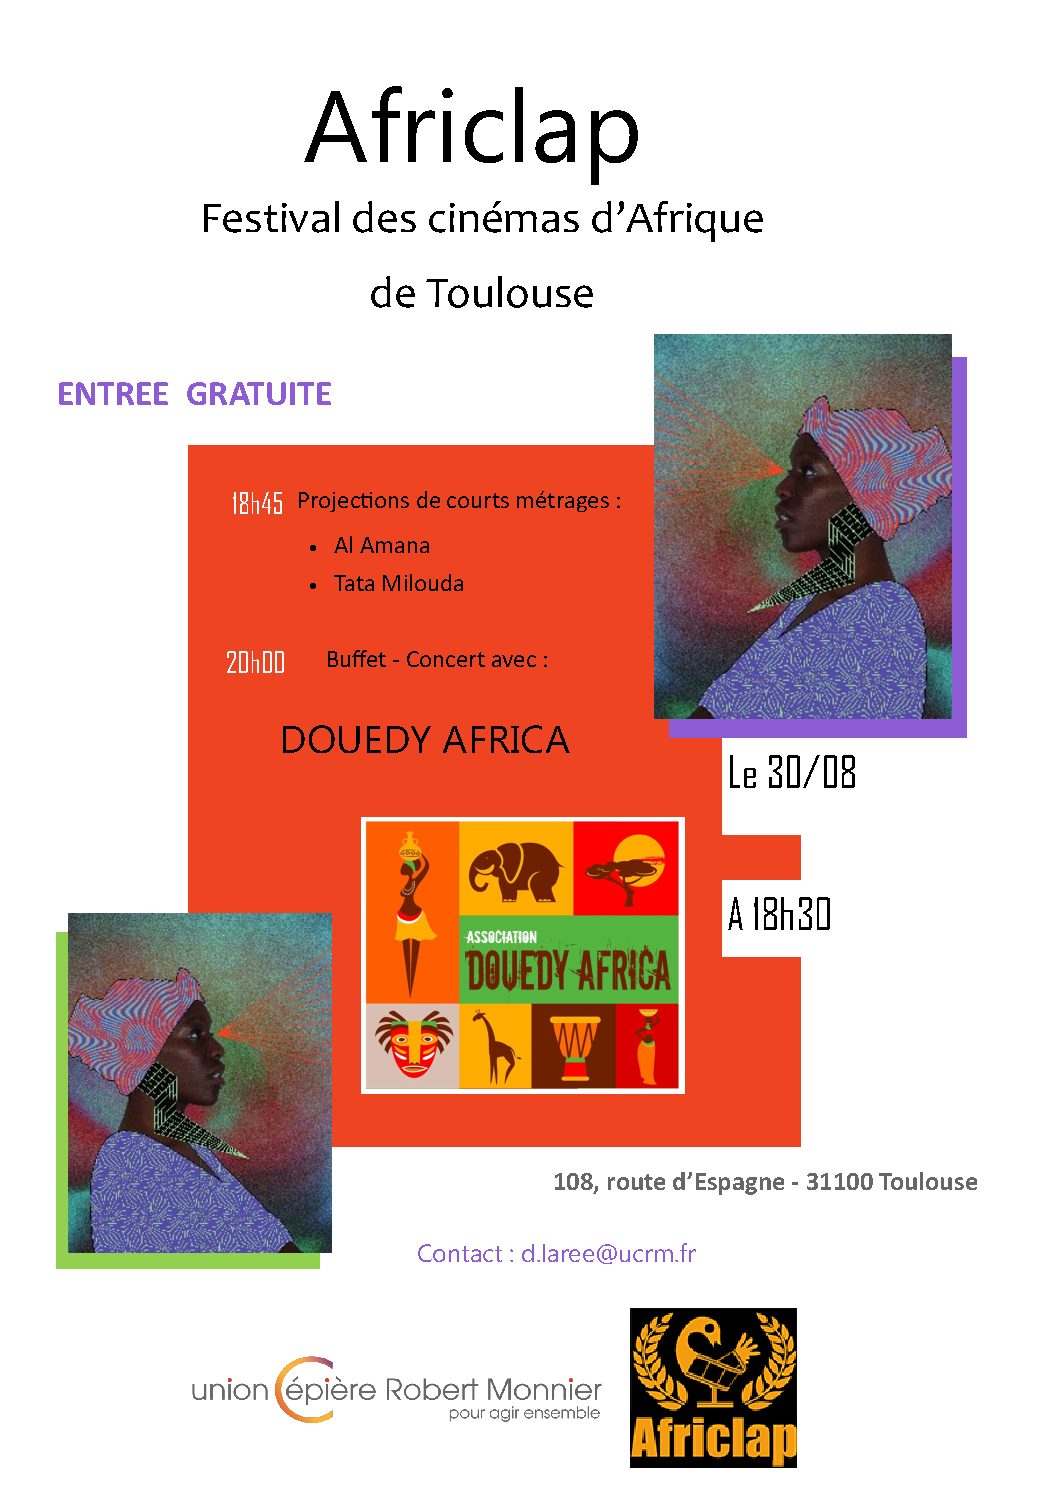 AFRICLAP: Festival des cinémas d'Afrique de Toulouse